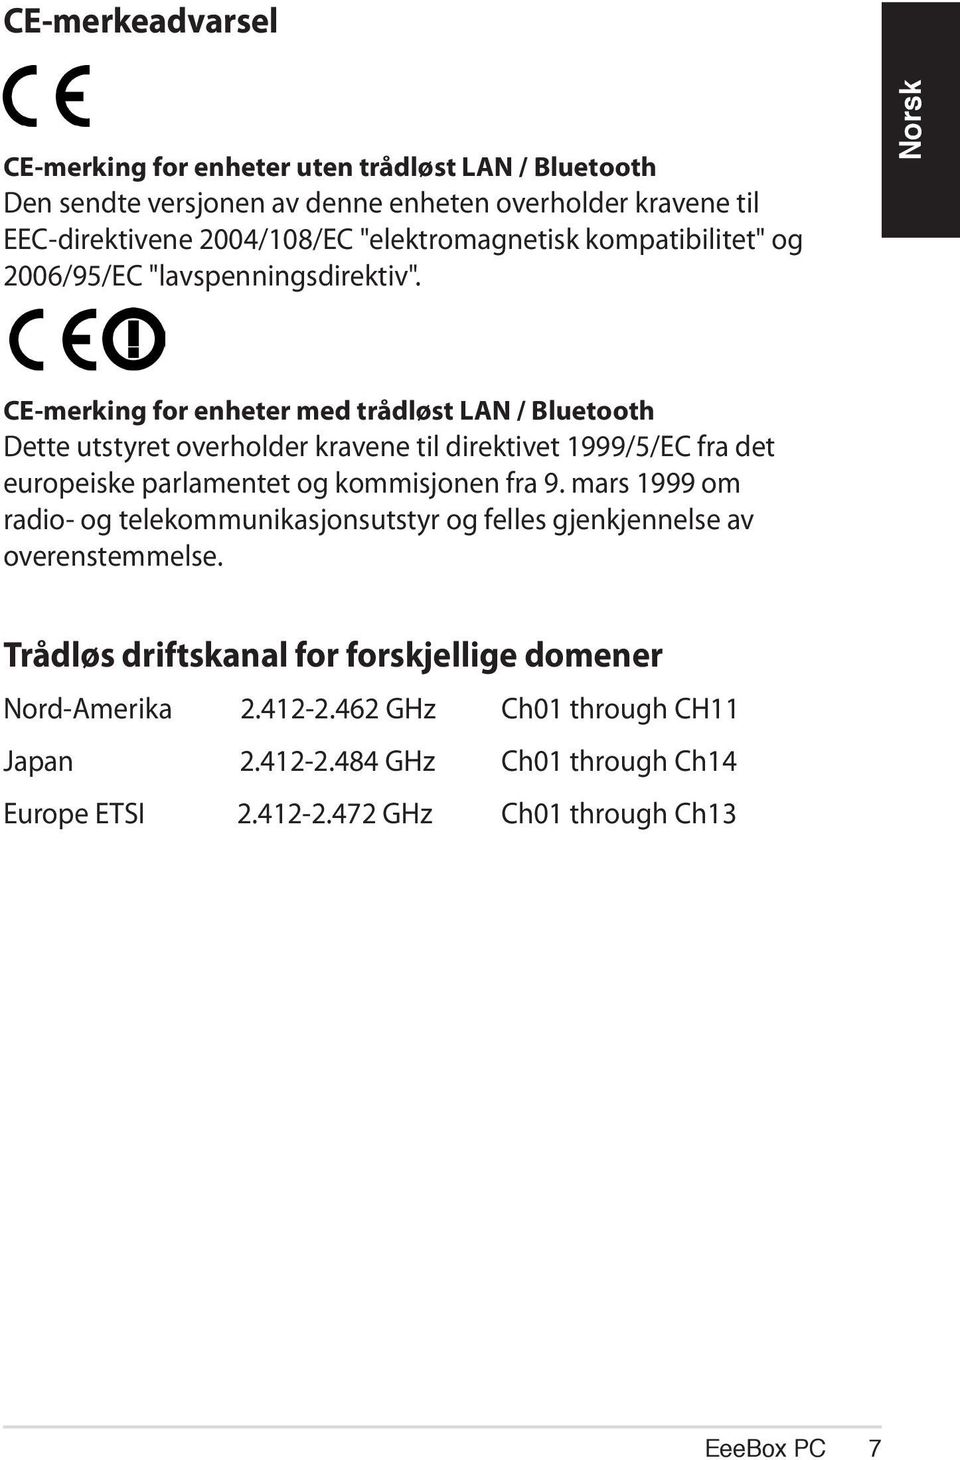 CE-merking for enheter med trådløst LAN / Bluetooth Dette utstyret overholder kravene til direktivet 1999/5/EC fra det europeiske parlamentet og kommisjonen fra 9.